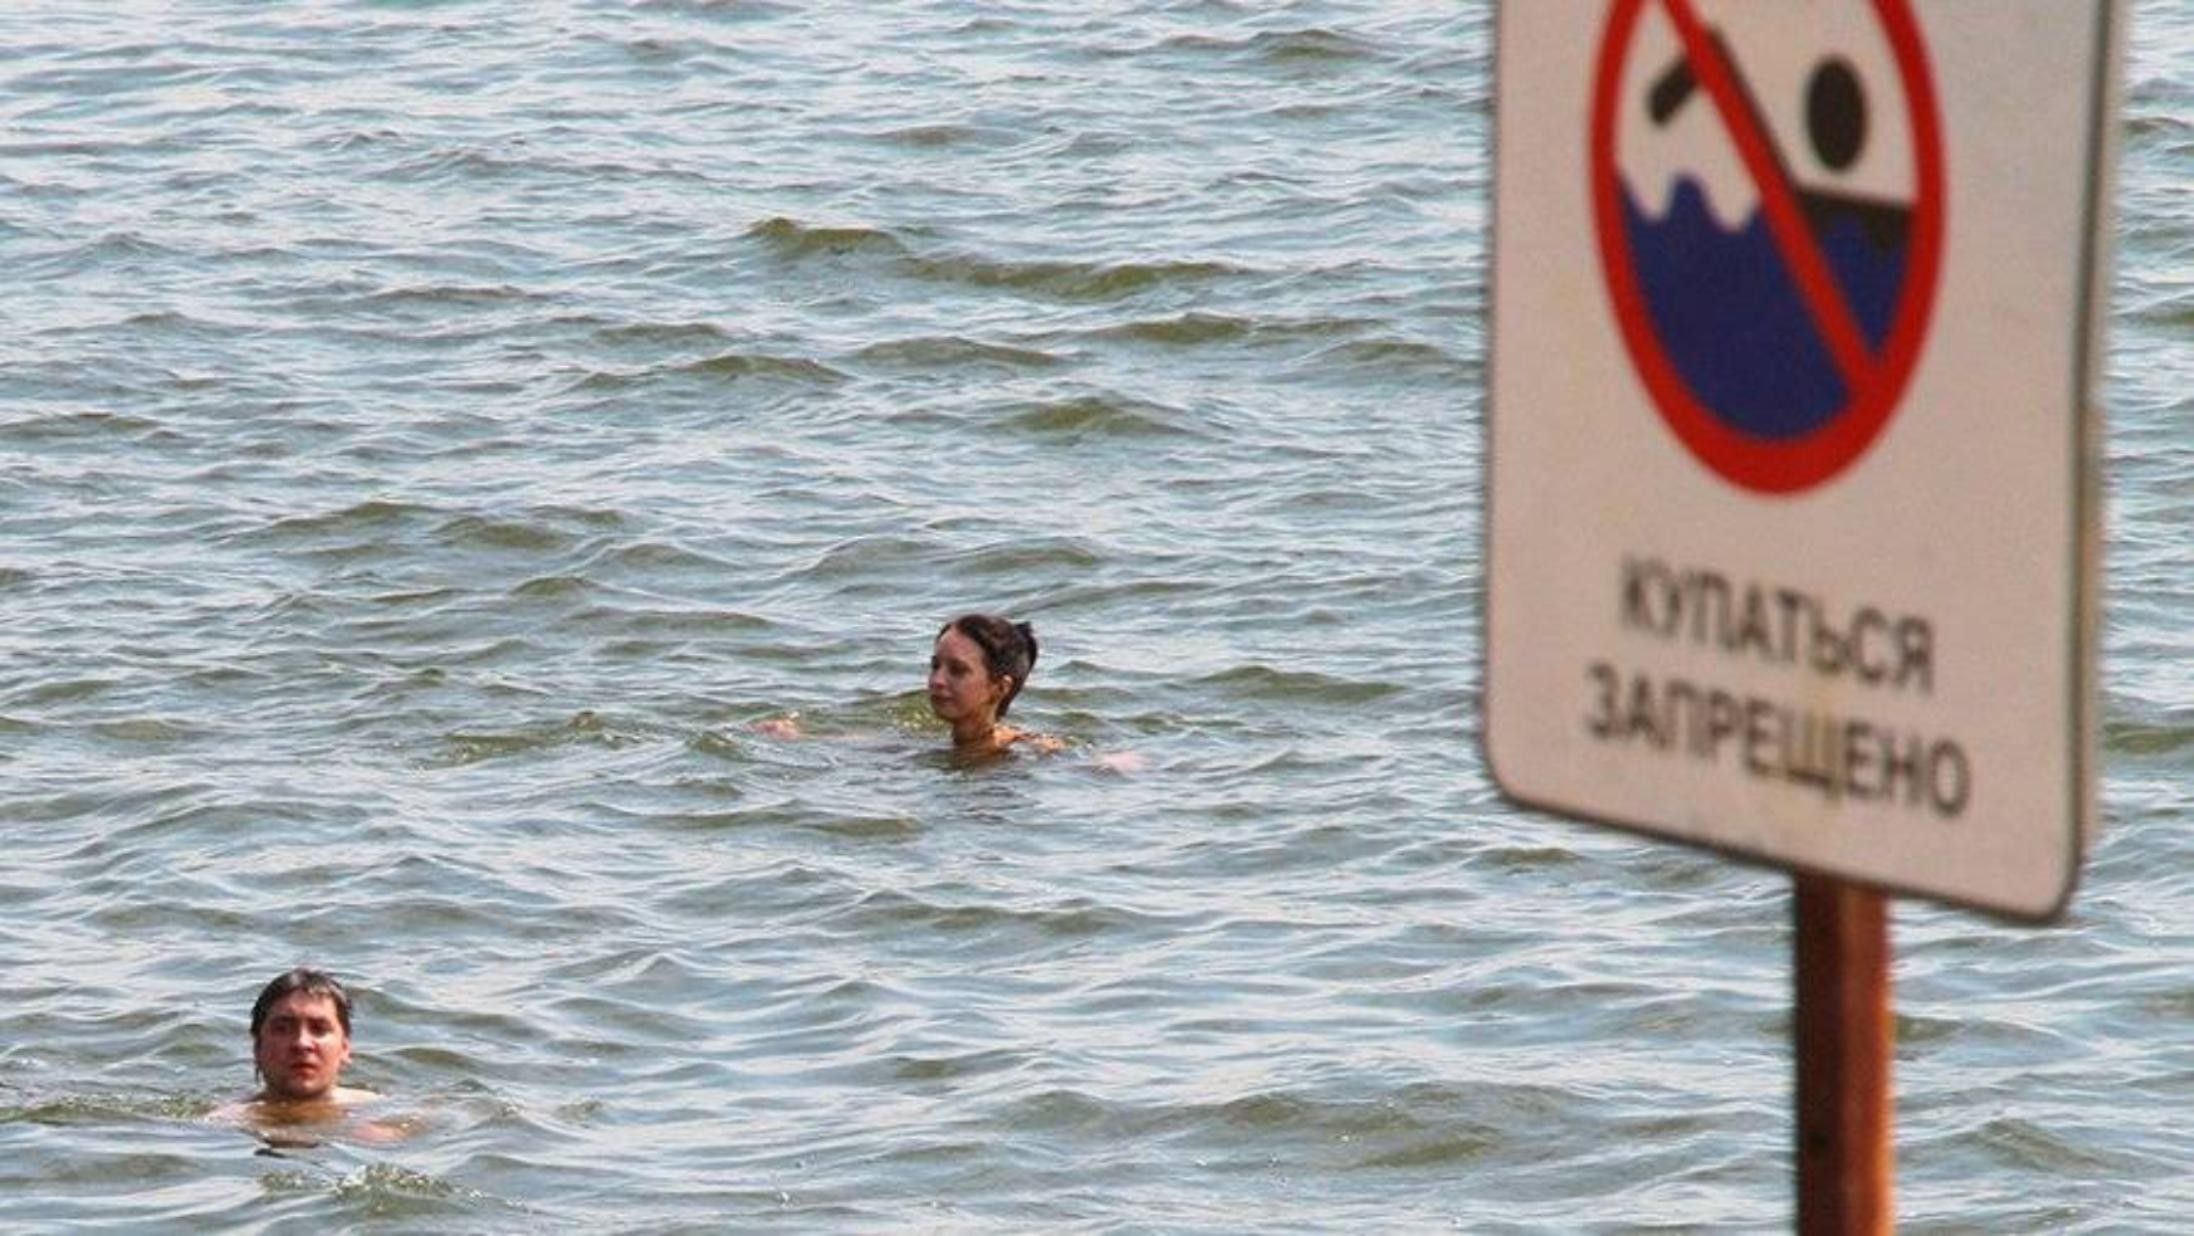  В Архангельске установлено 72 знака о запрете купания